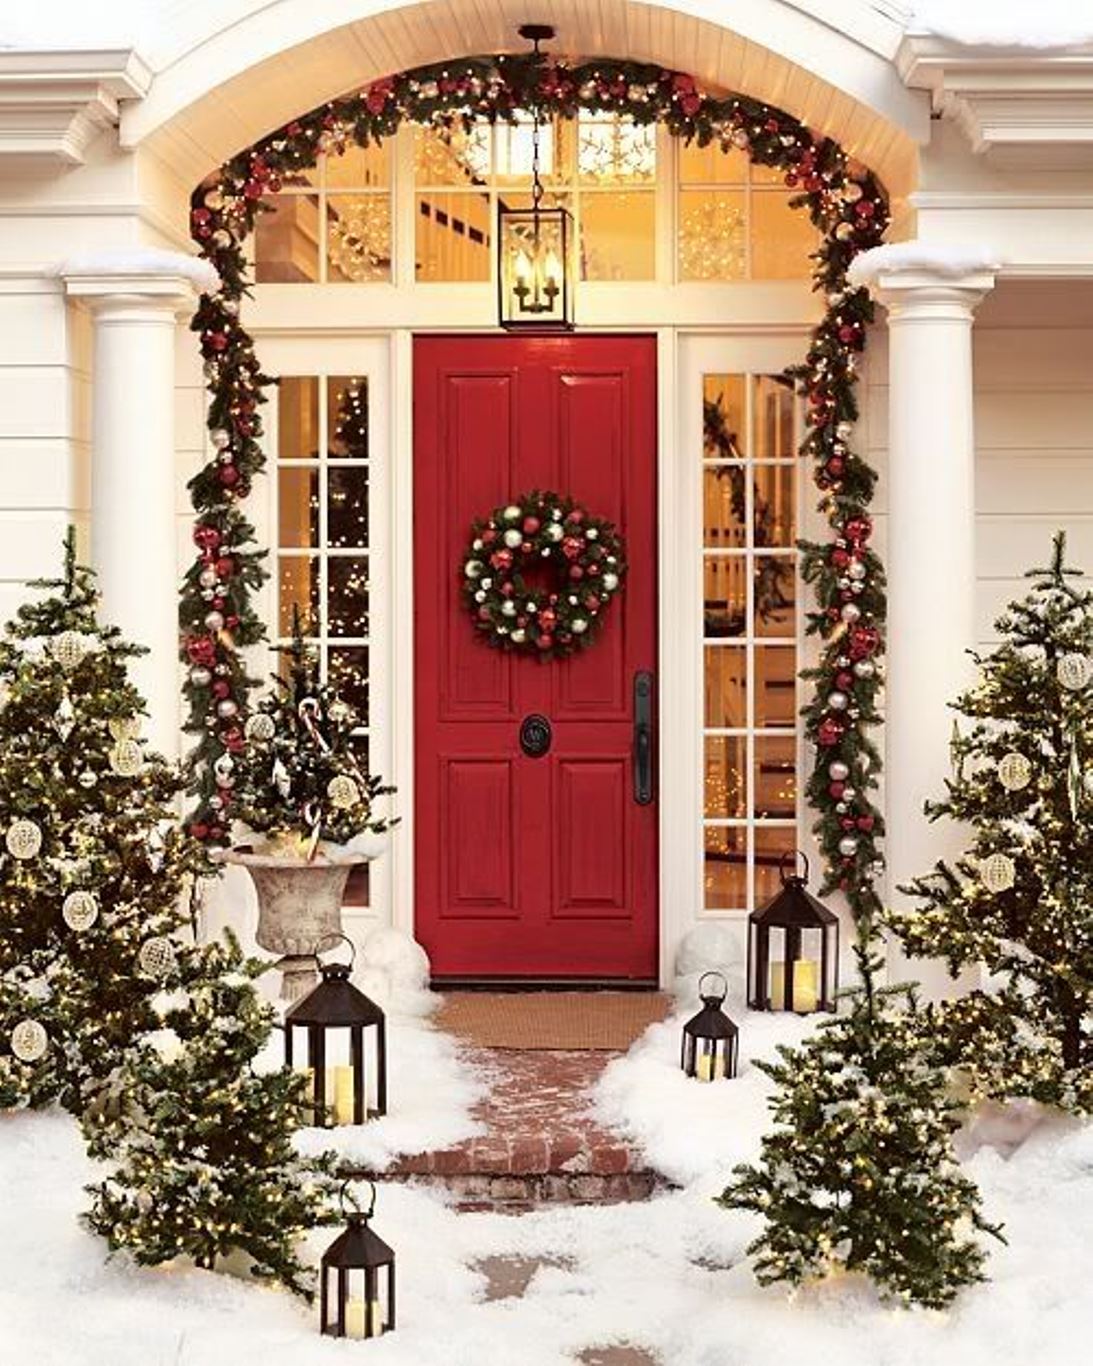 Snowy Wreath Christmas Decor Ideas1 ?x16372